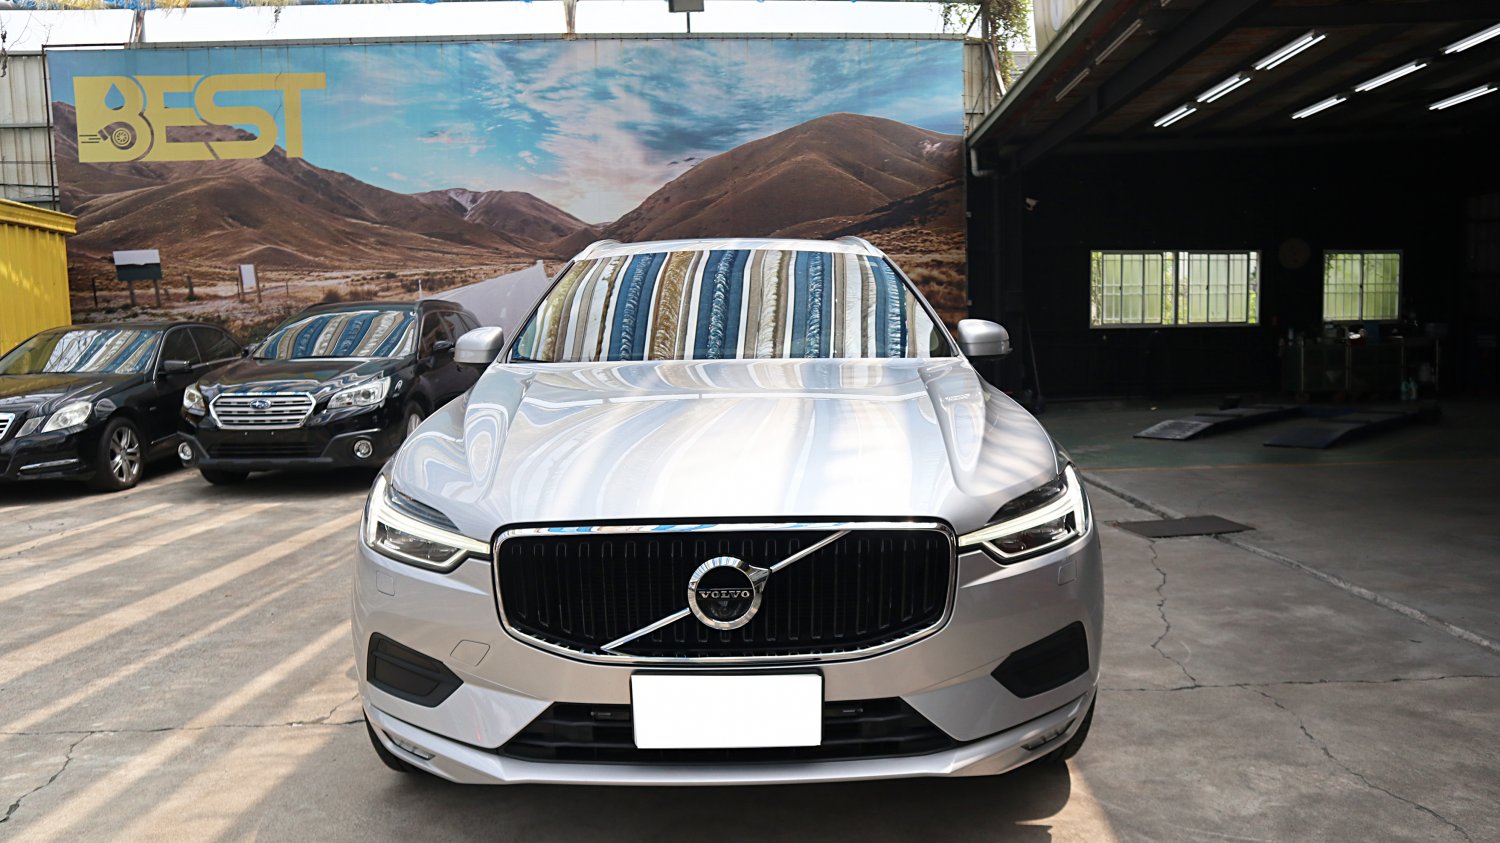 Volvo 富豪 ／ XC60 ／ 2019年 ／ 2019年VOLVO XC60 銀色 富豪中古車 ／ MG車庫(台南)